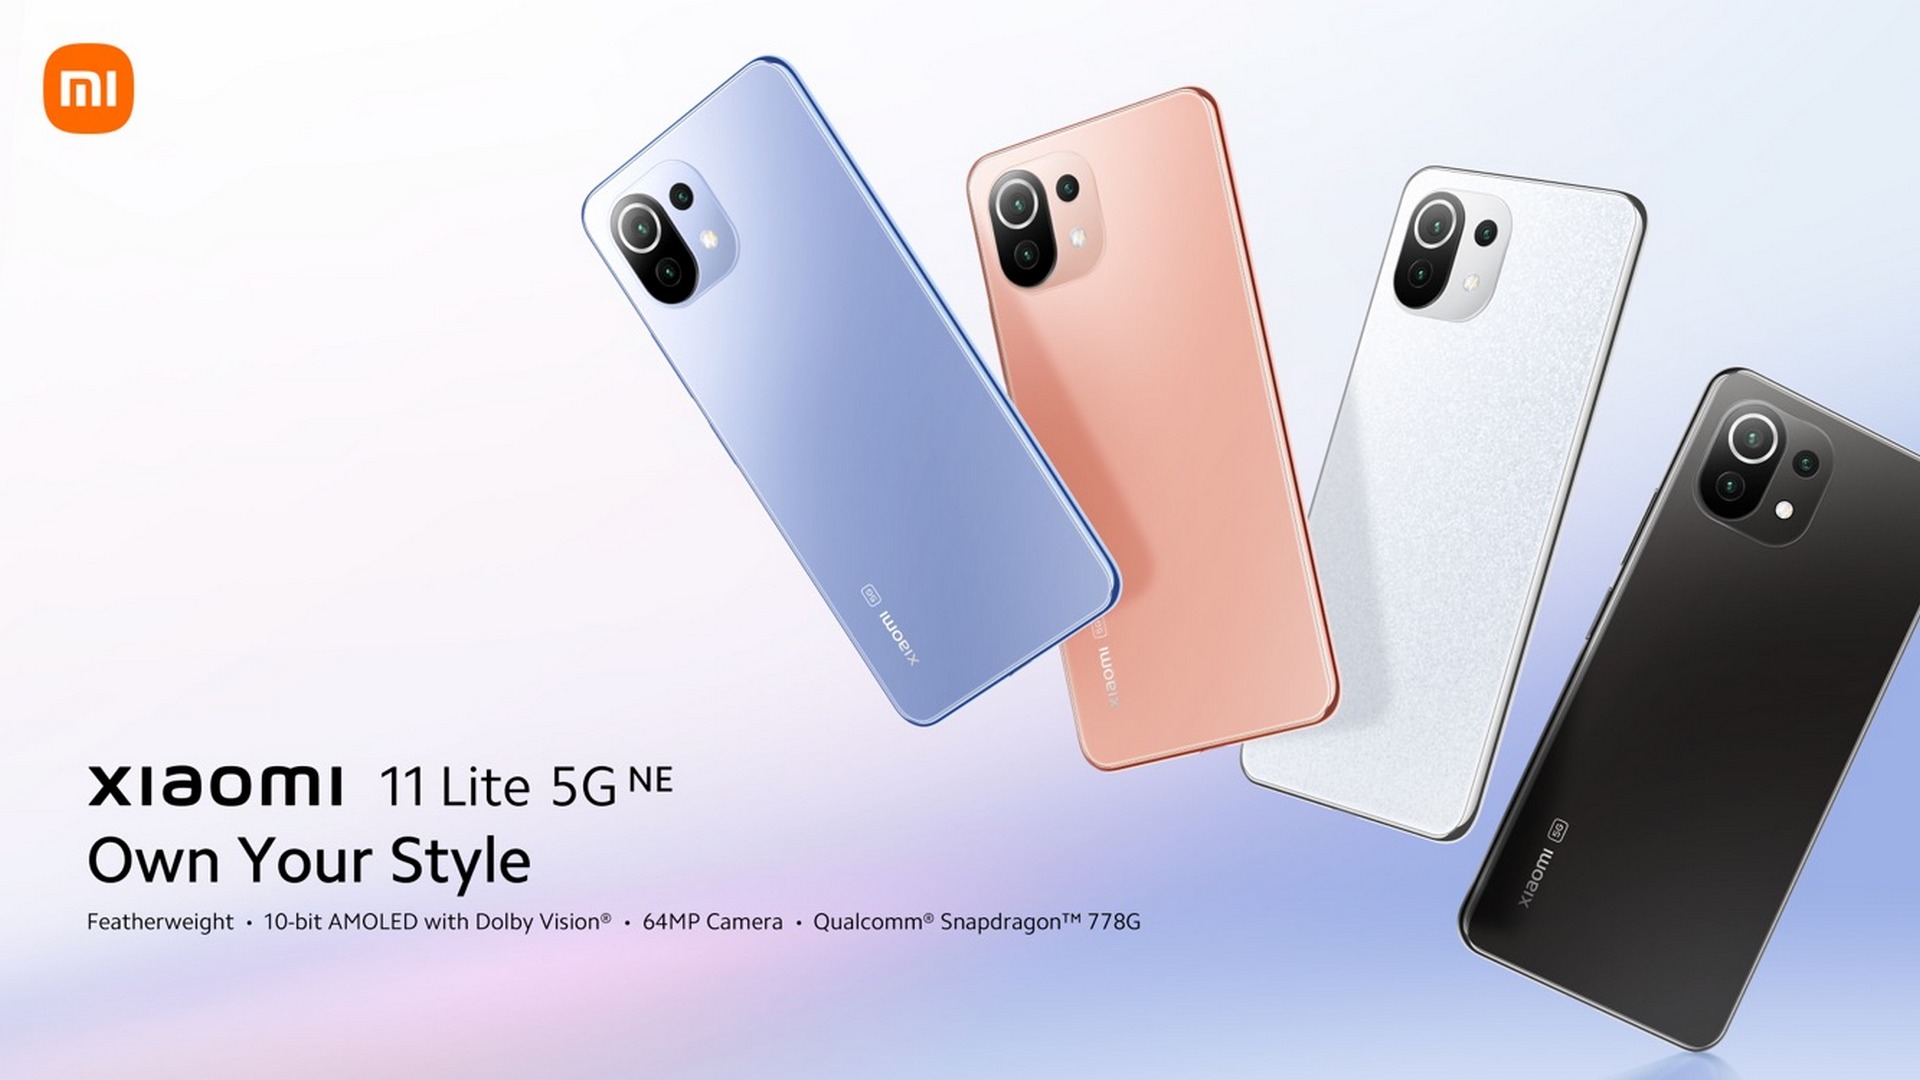 Xiaomi 11 Lite 5G NE ufficiale | Scheda tecnica | Prezzo - GizChina.it